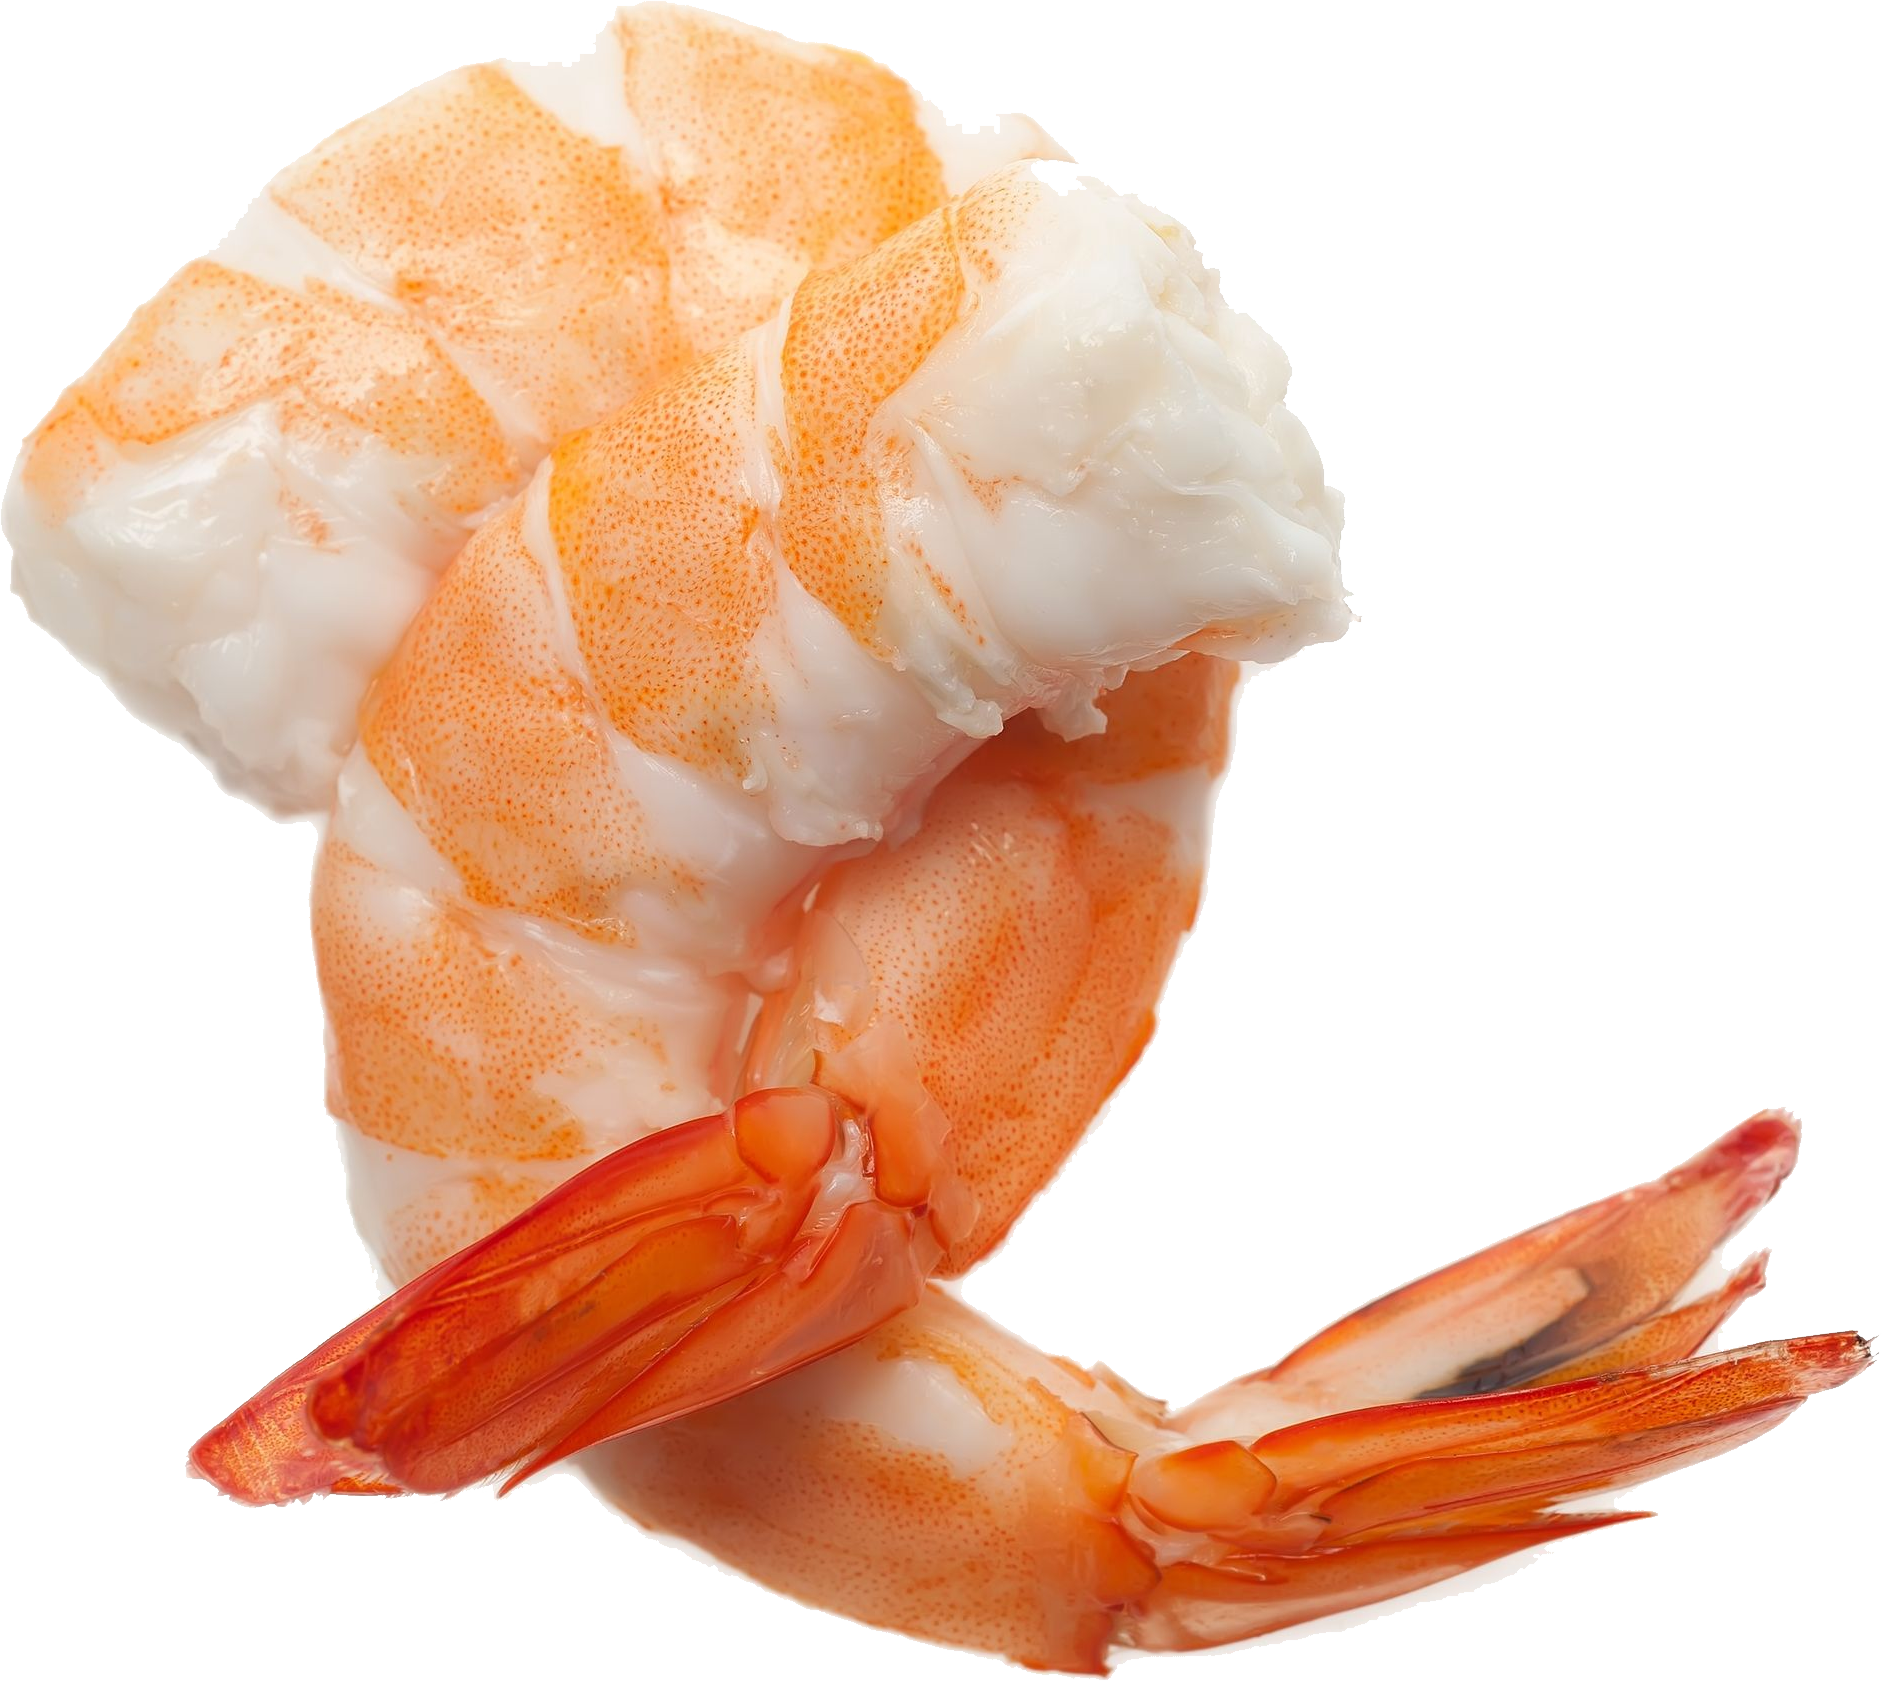 Shrimp/prawn